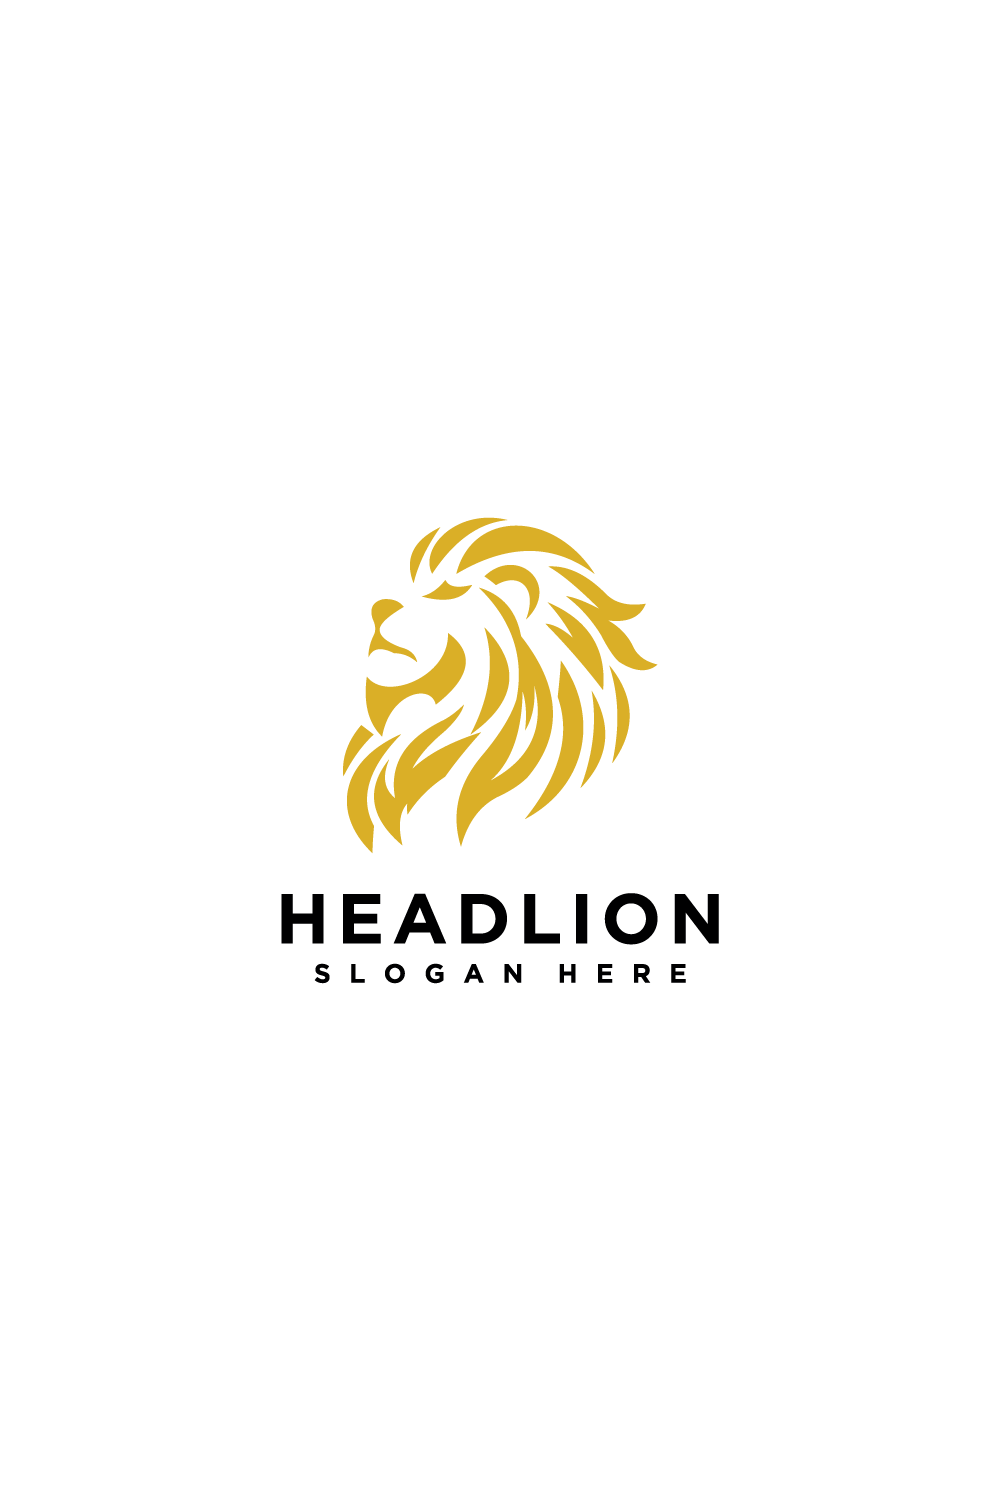 lion head logo pinterest preview image.